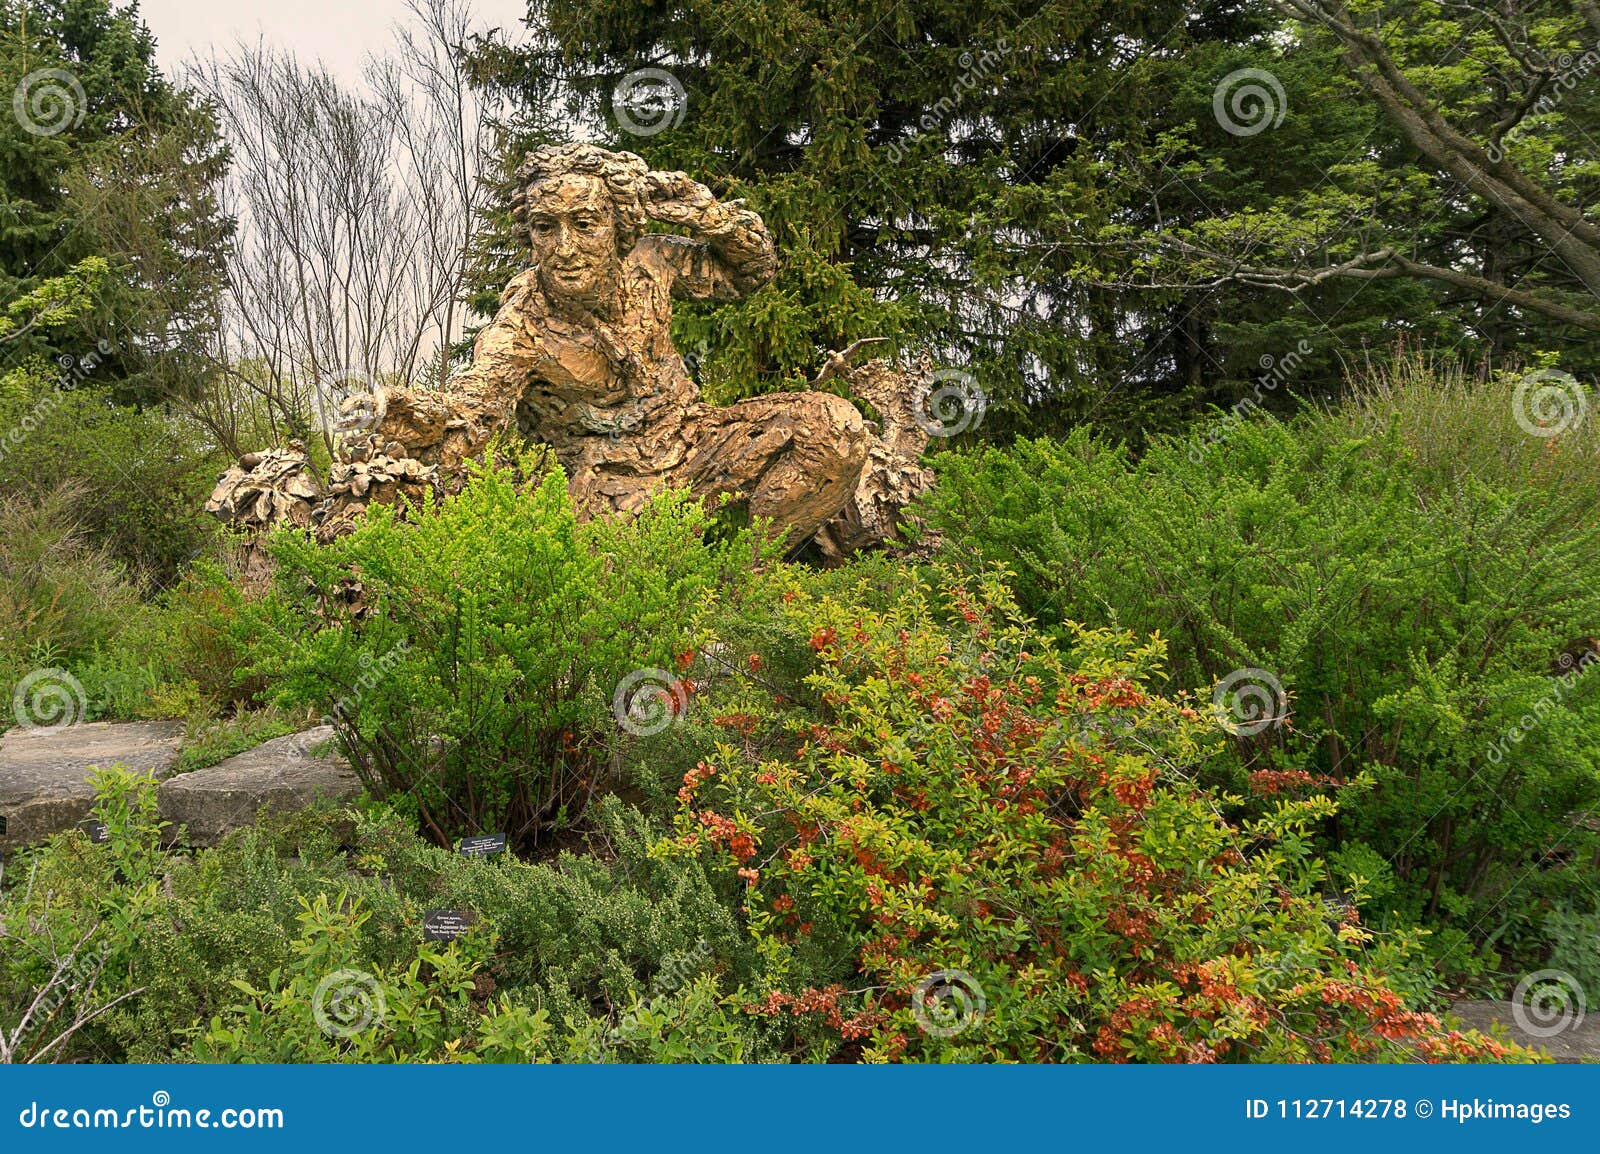 Linnaeus Sculpture In Botanical Garden Editorial Stock Photo